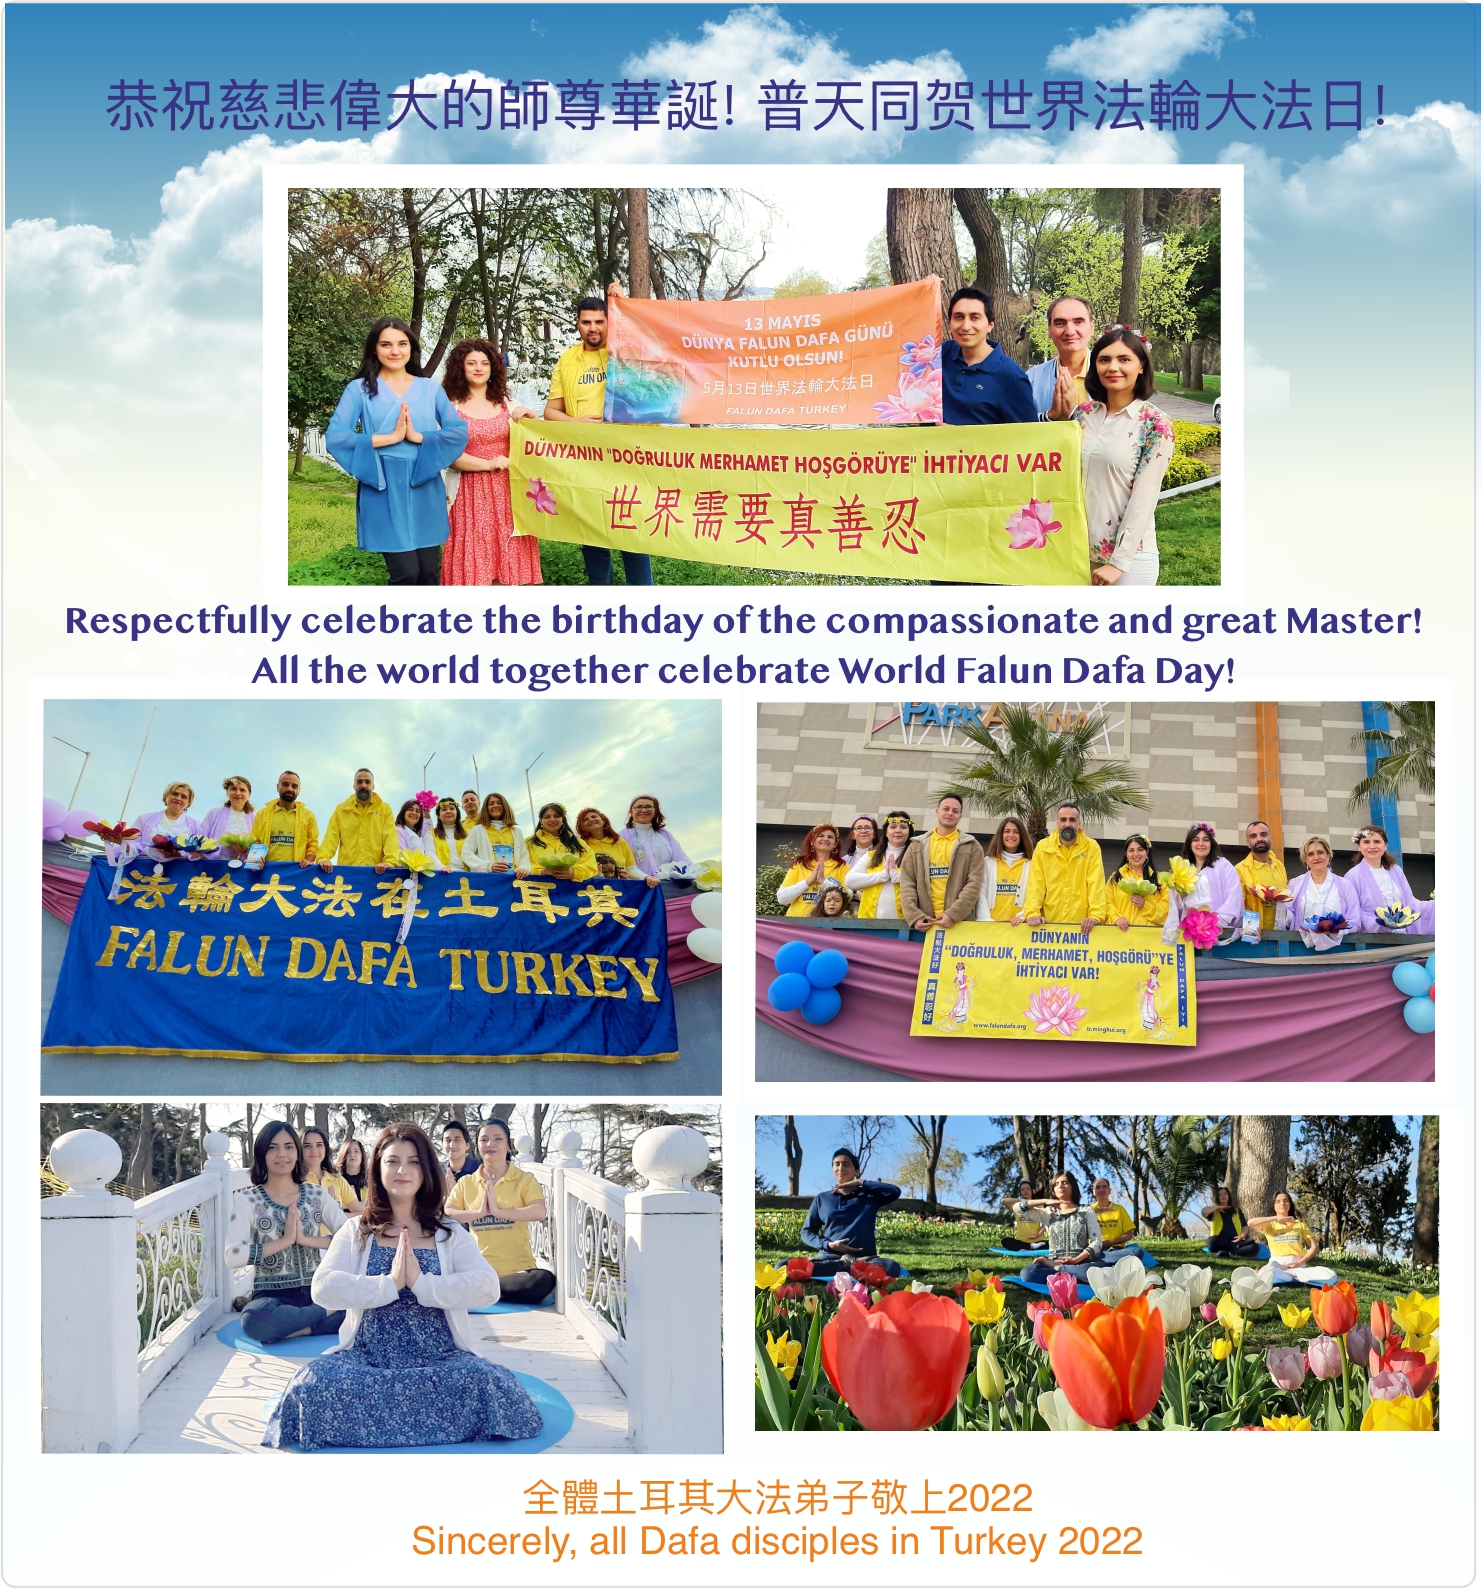 Image for article Türkiye'deki Uygulayıcılar 30'uncu Dünya Falun Dafa Gününü ve Saygıdeğer Shifu'nun Doğum Gününü Kutluyorlar!